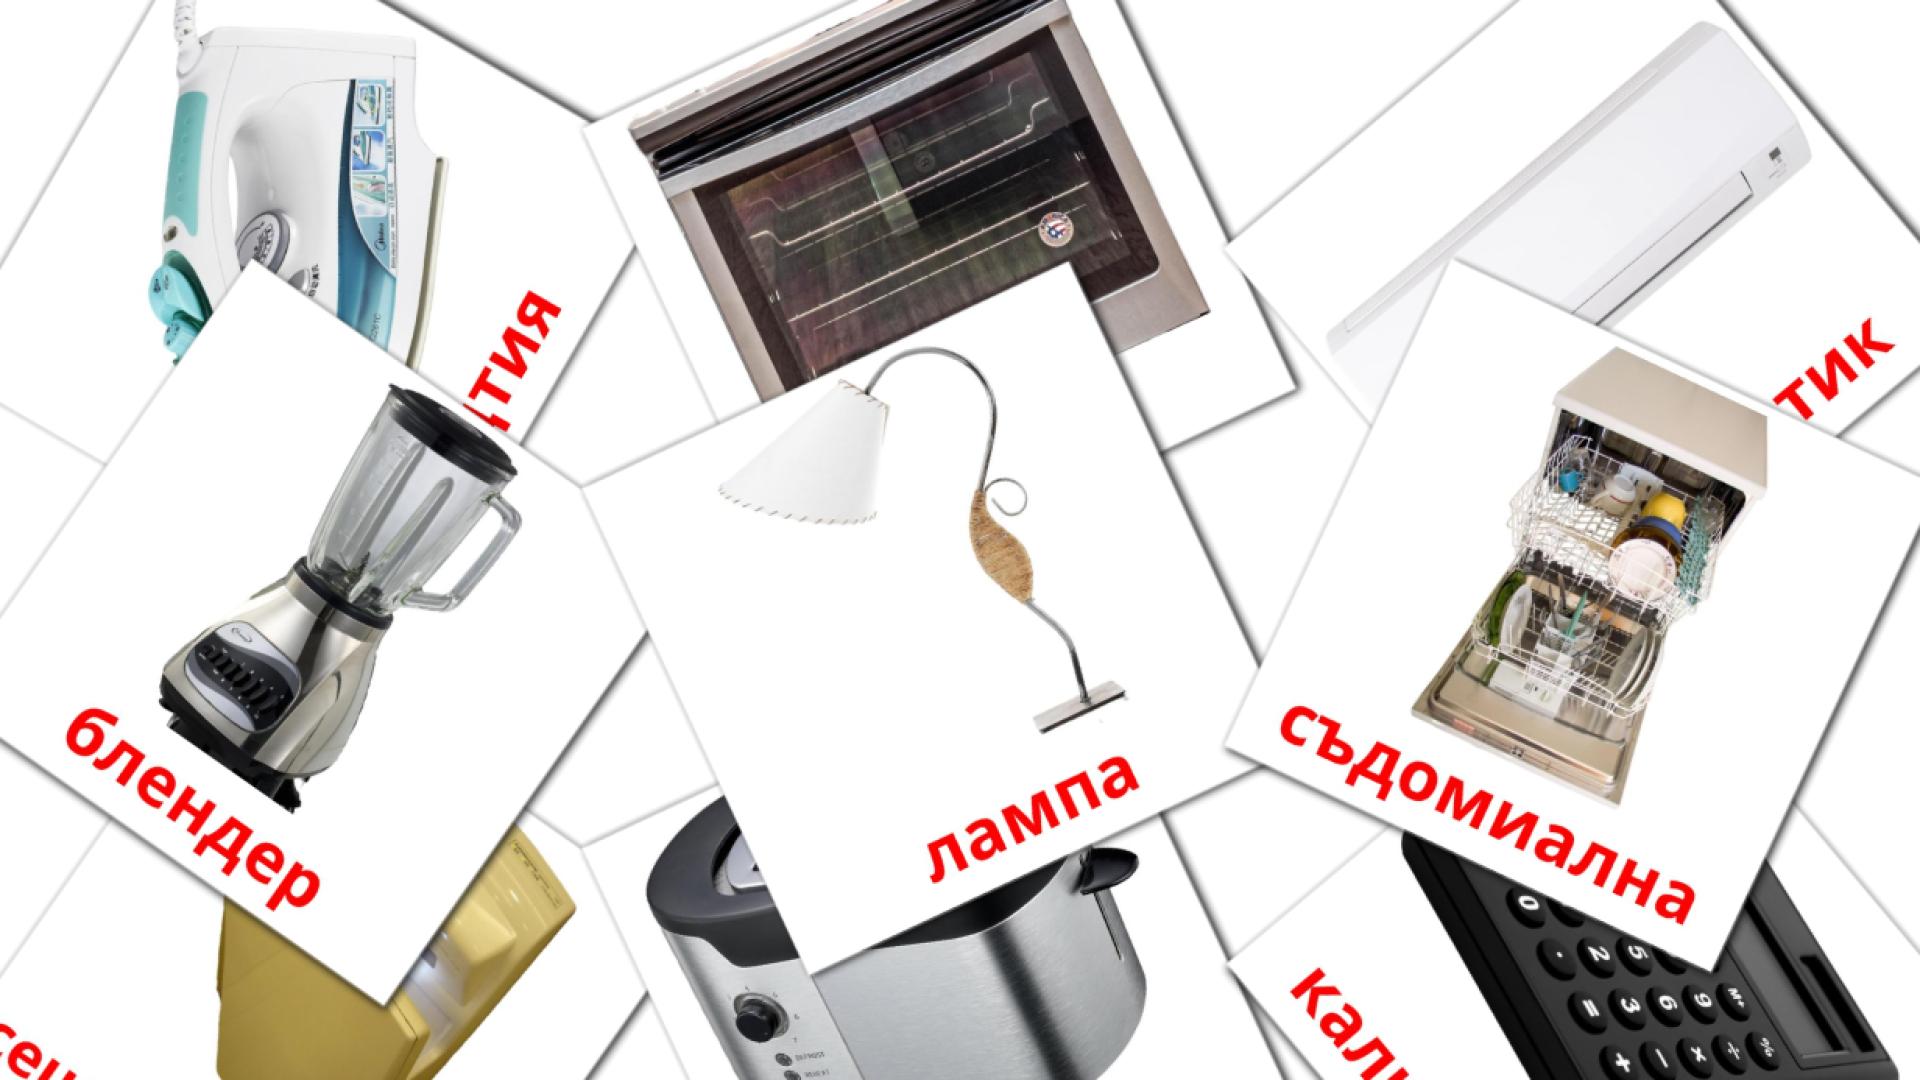 Electronics - bulgarian vocabulary cards